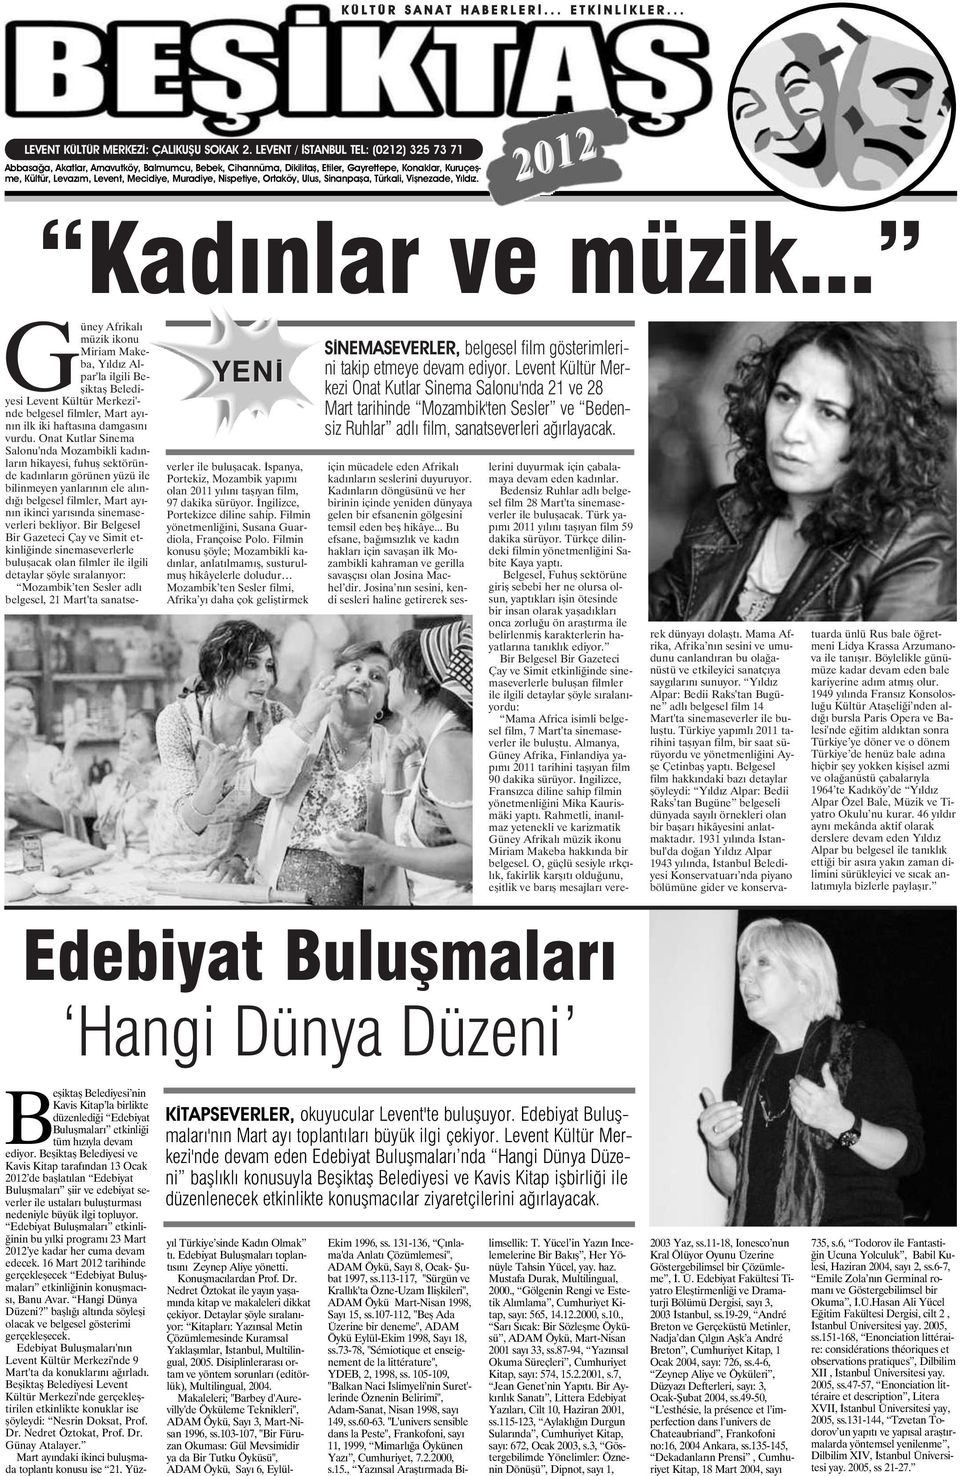 Nispetiye, Ortaköy, Ulus, Sinanpaşa, Türkali, Vişnezade, Yıldız. 2012 Kadınlar ve müzik.